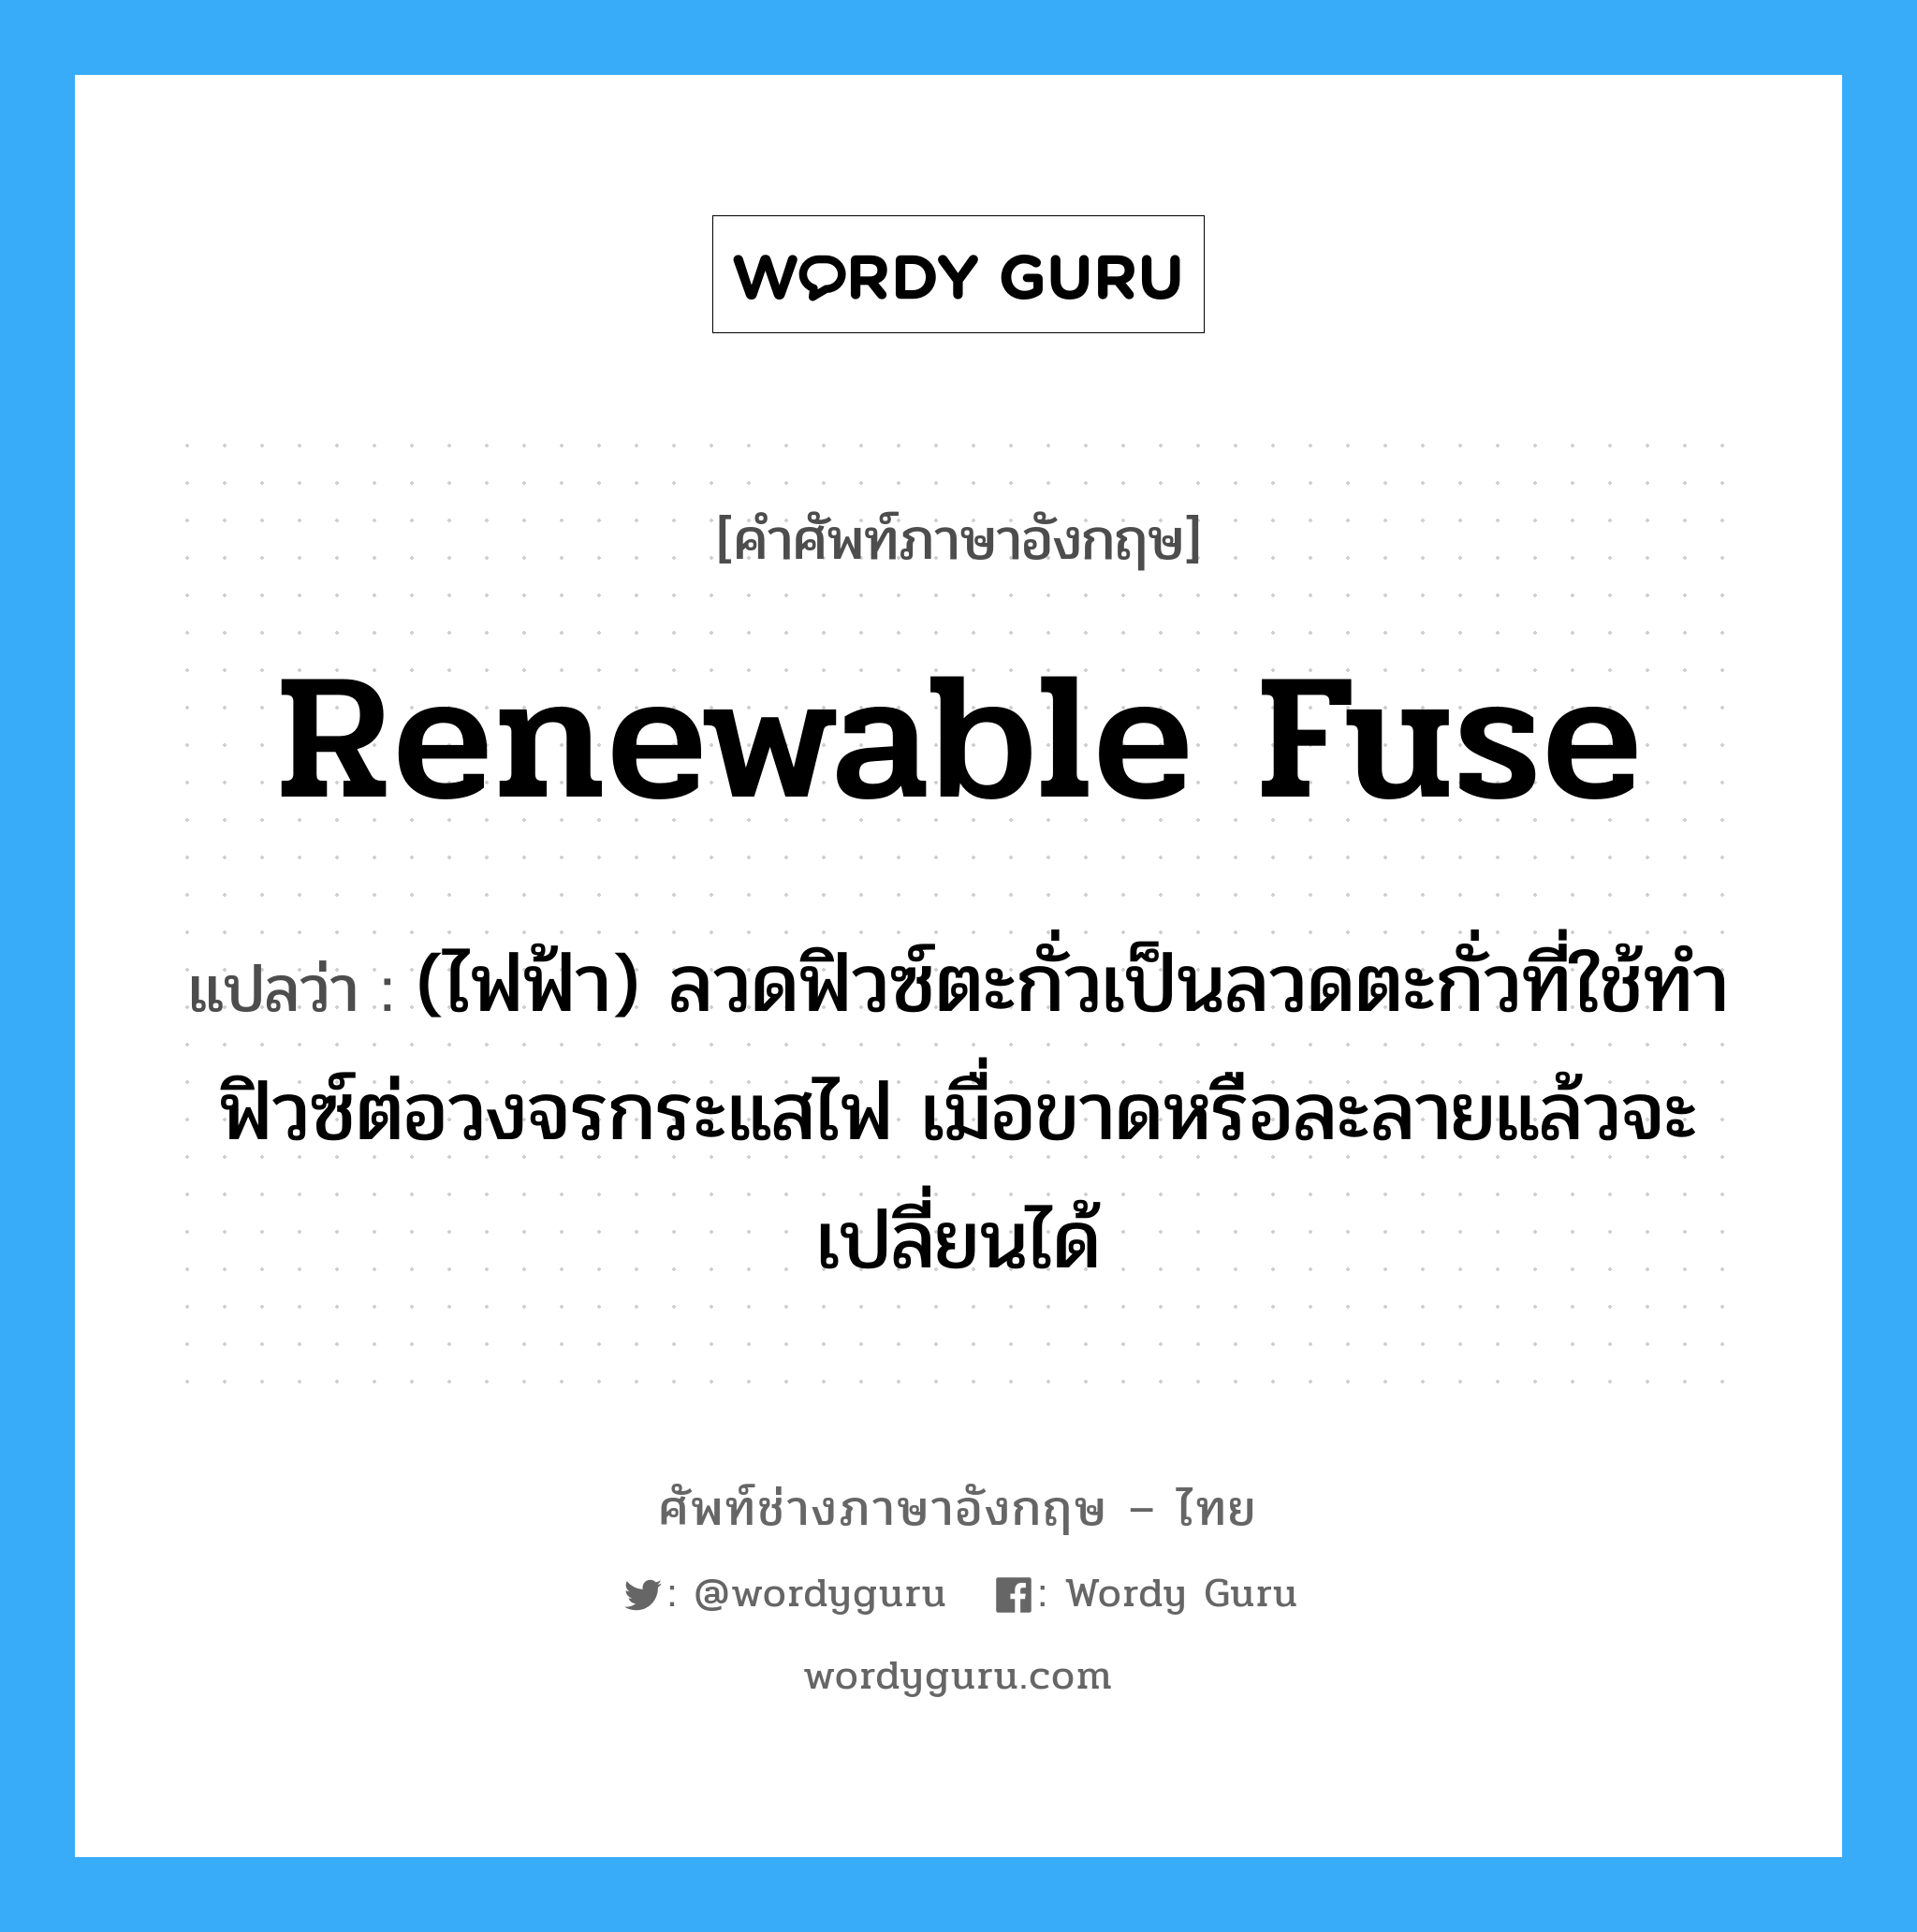 renewable fuse แปลว่า?, คำศัพท์ช่างภาษาอังกฤษ - ไทย renewable fuse คำศัพท์ภาษาอังกฤษ renewable fuse แปลว่า (ไฟฟ้า) ลวดฟิวซ์ตะกั่วเป็นลวดตะกั่วที่ใช้ทำฟิวซ์ต่อวงจรกระแสไฟ เมื่อขาดหรือละลายแล้วจะเปลี่ยนได้